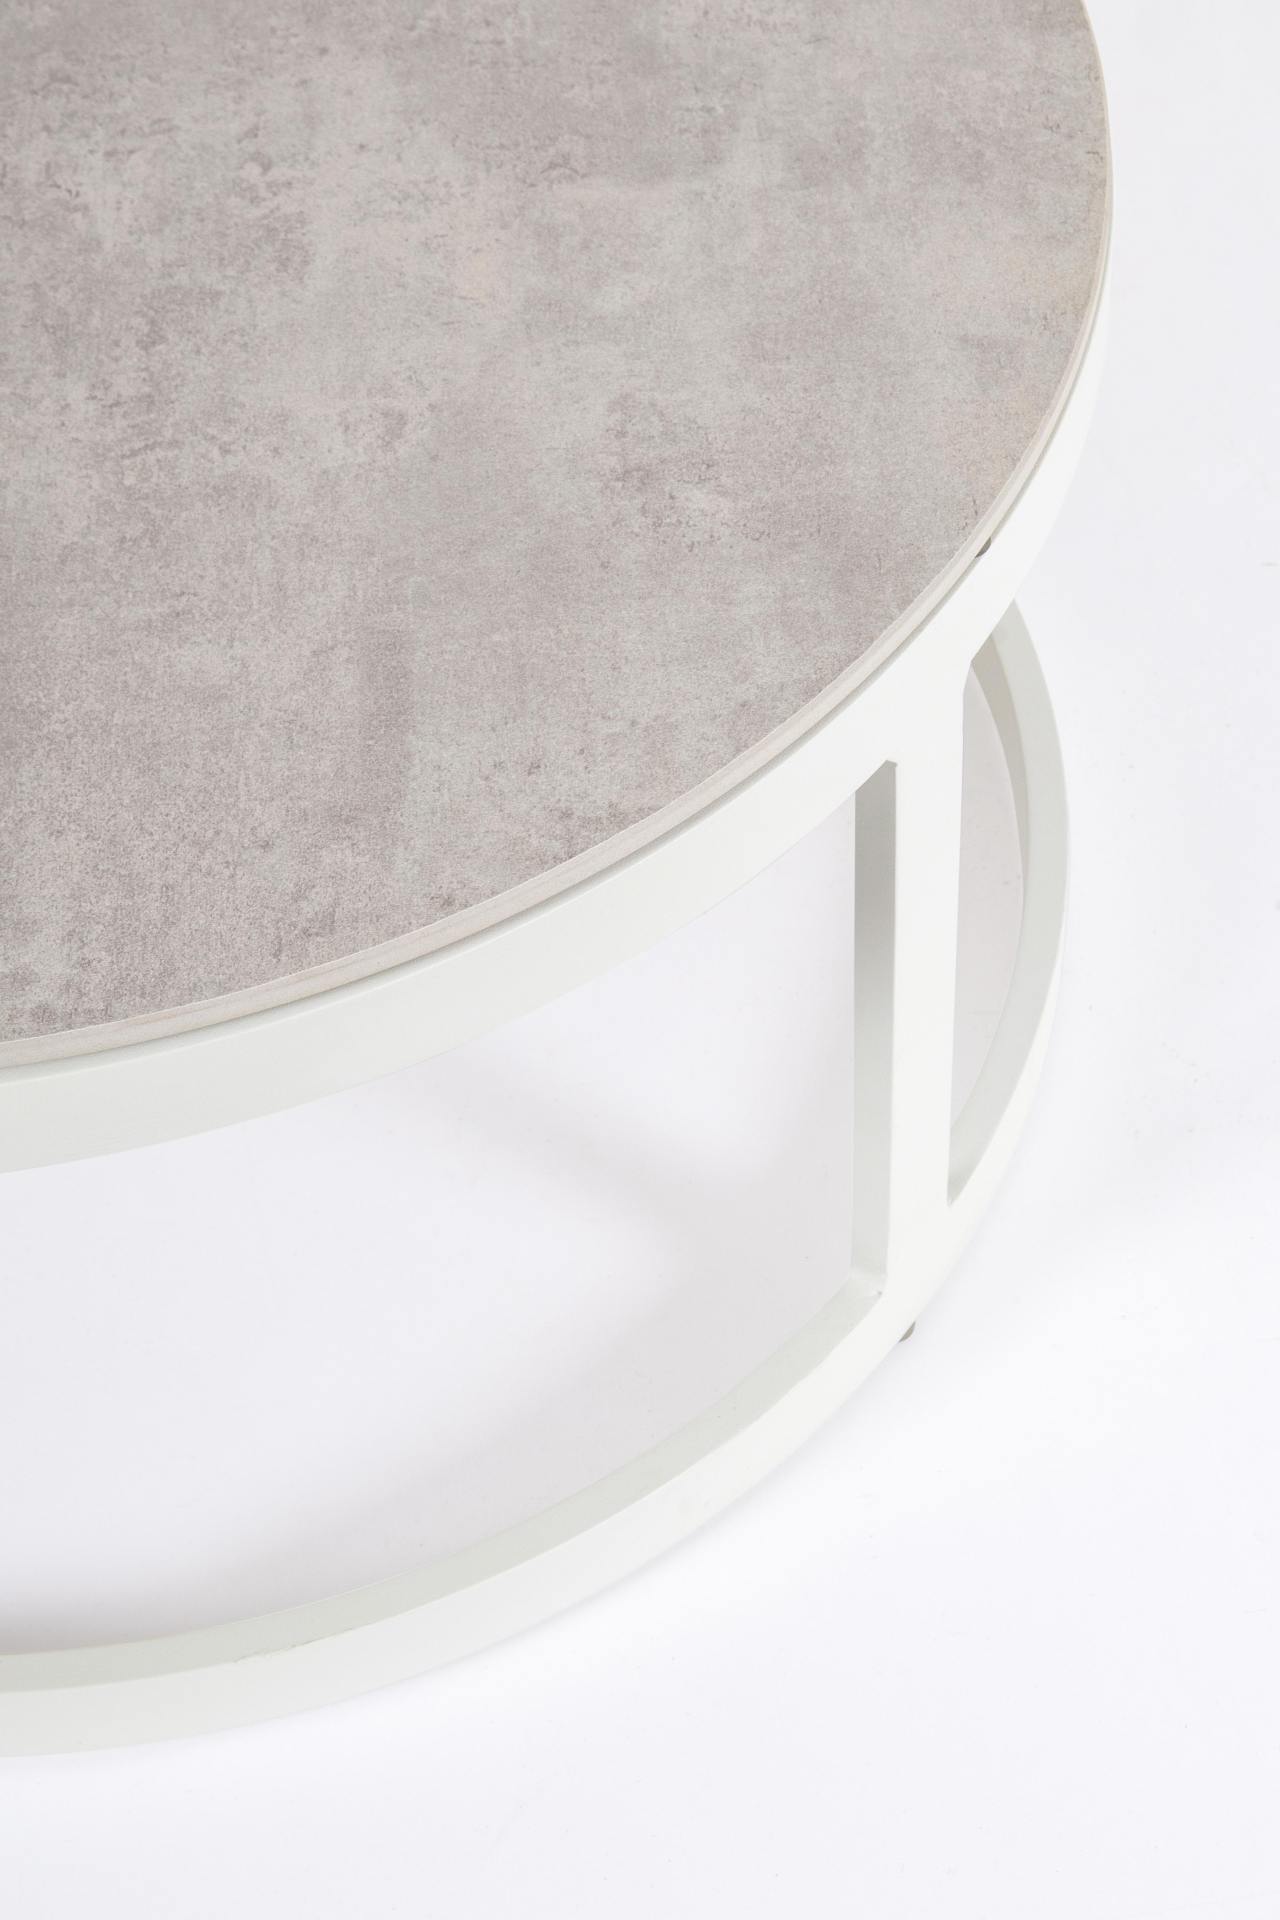 Der Couchtisch Talunas als 2er-Set überzeugt mit seinem modernen Design. Gefertigt wurde er aus Keramik, welches einen grauen Farbton besitzt. Das Gestell ist auch aus Aluminium und hat eine weiße Farbe. Der Couchtisch verfügt über einen Durchmesser von 9